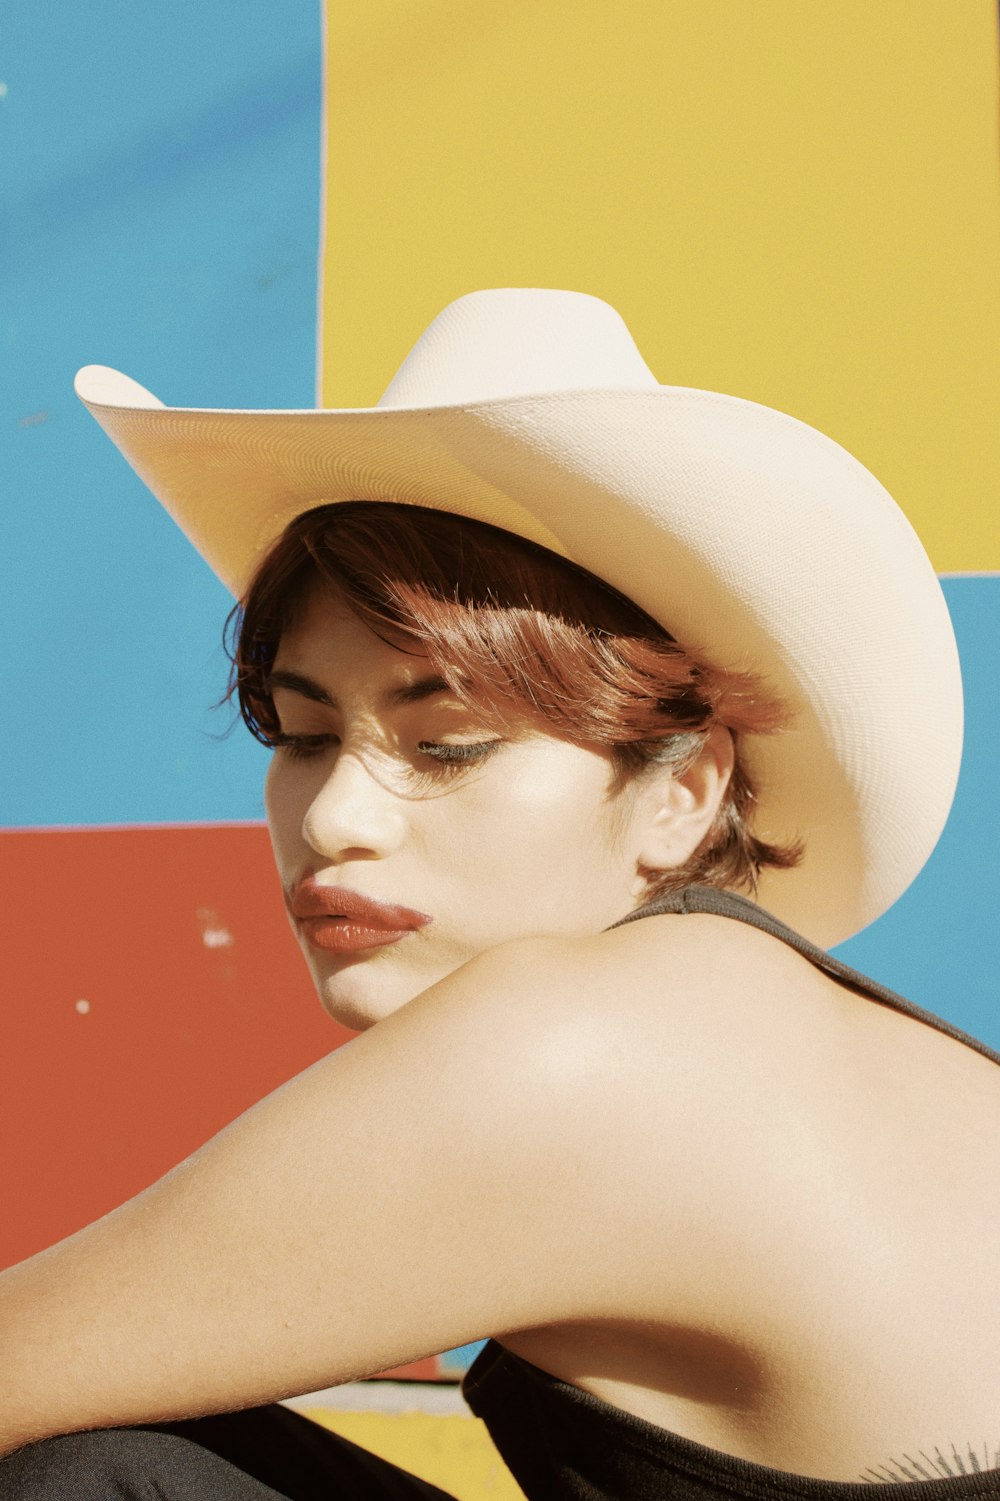 Une femme portant un chapeau de cow-boy blanc assise contre un mur coloré